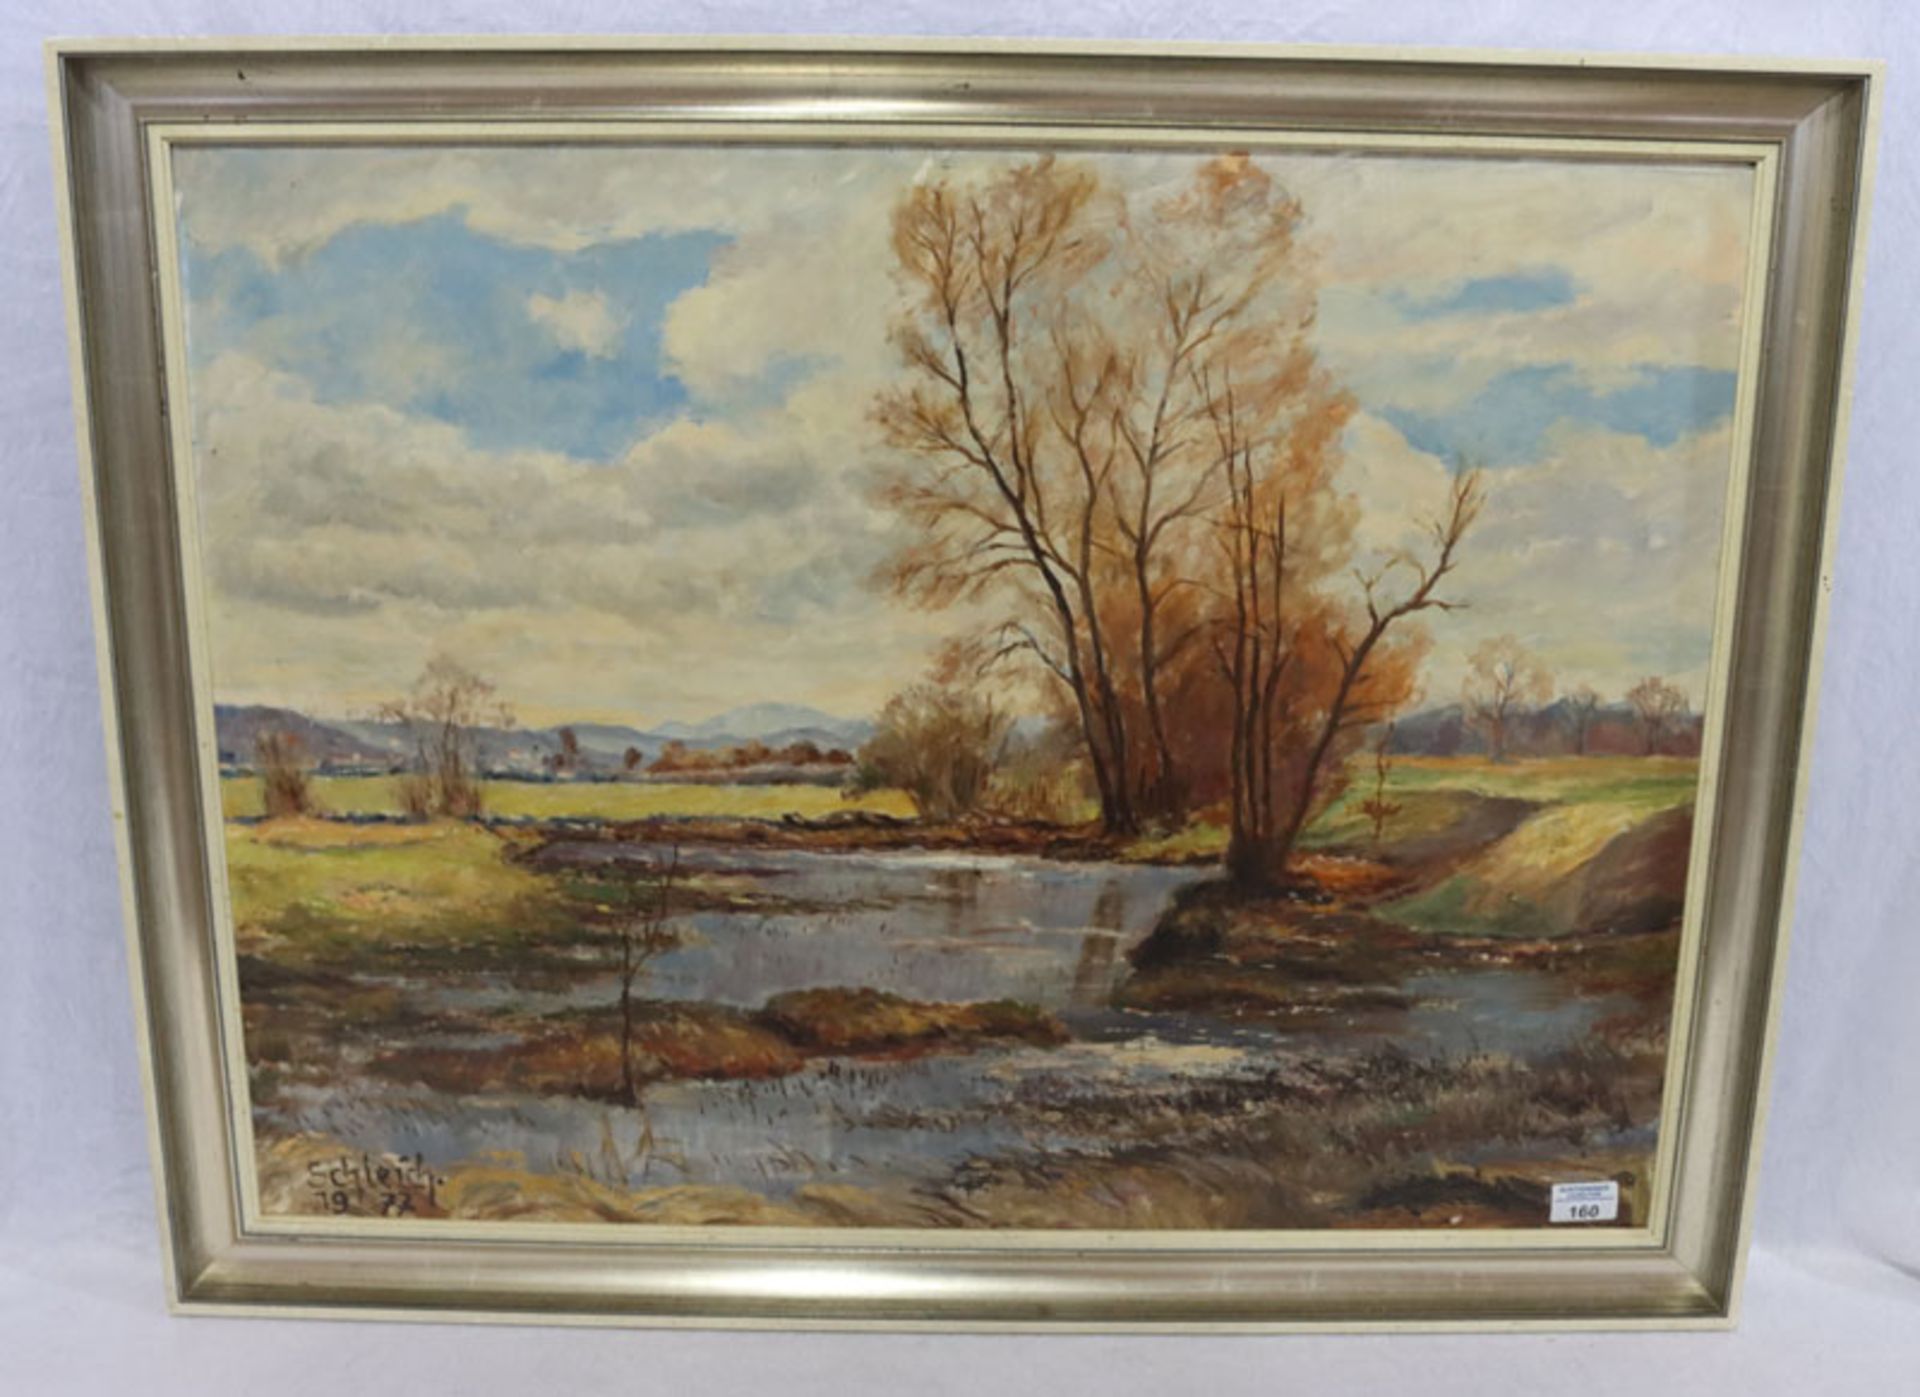 Gemälde ÖL/Hartfaser 'Murnauer Moor', signiert Schleich 1977, gerahmt, Rahmen bestossen, incl.